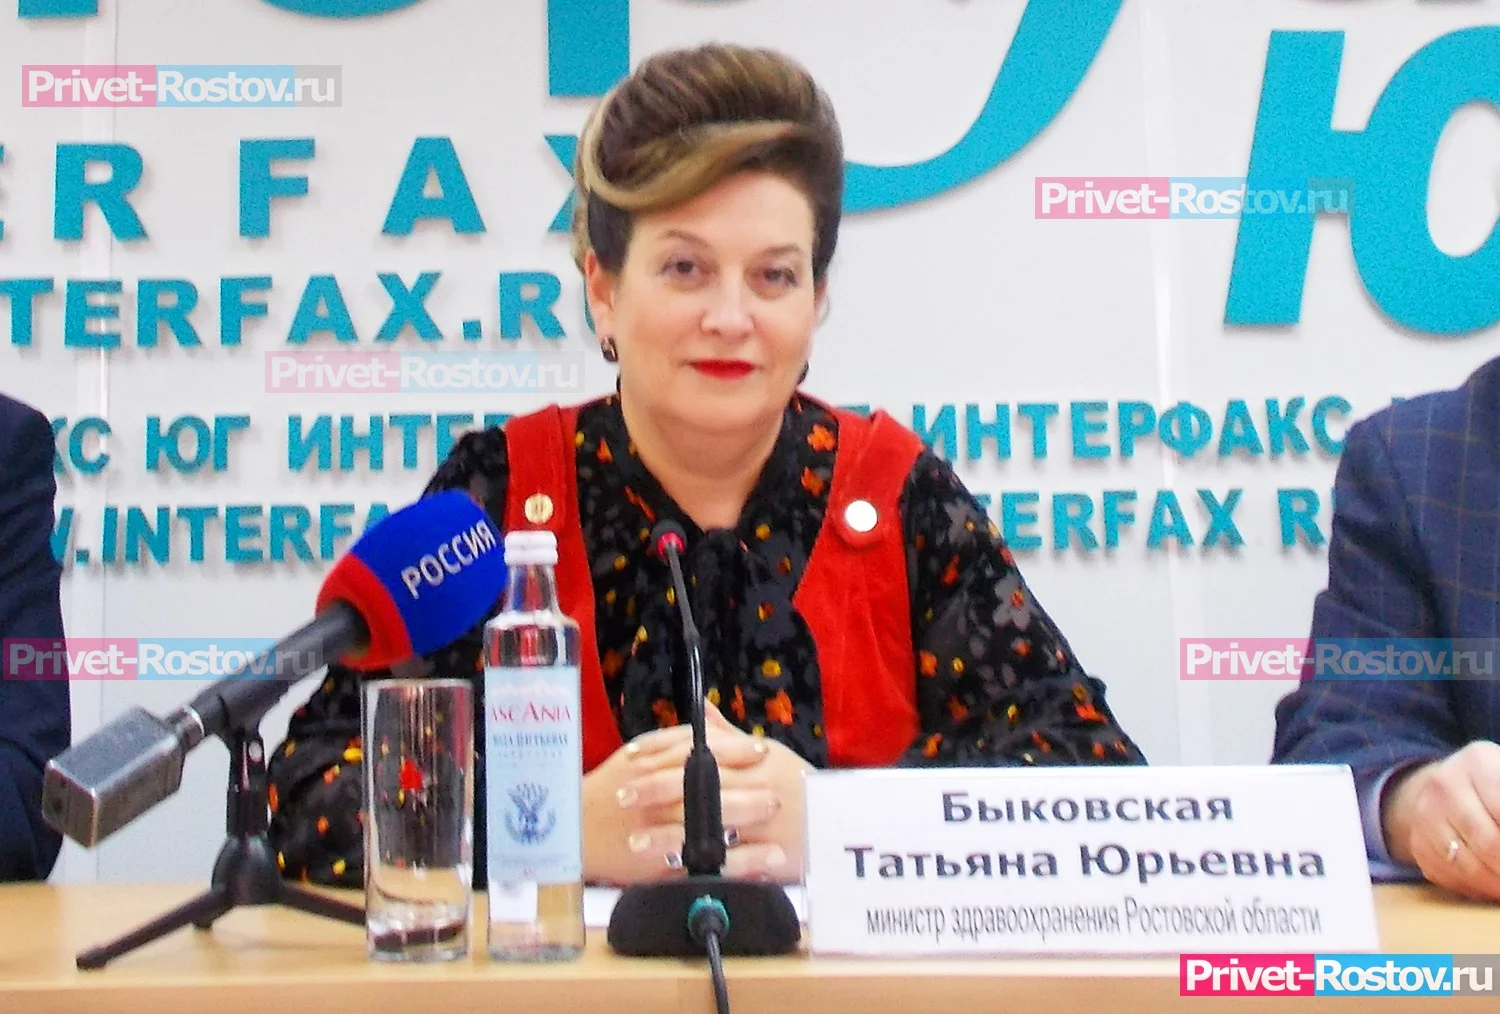 Донские больницы урезали расходы, чтобы работать с «Центром 100» по указке Татьяны Быковской